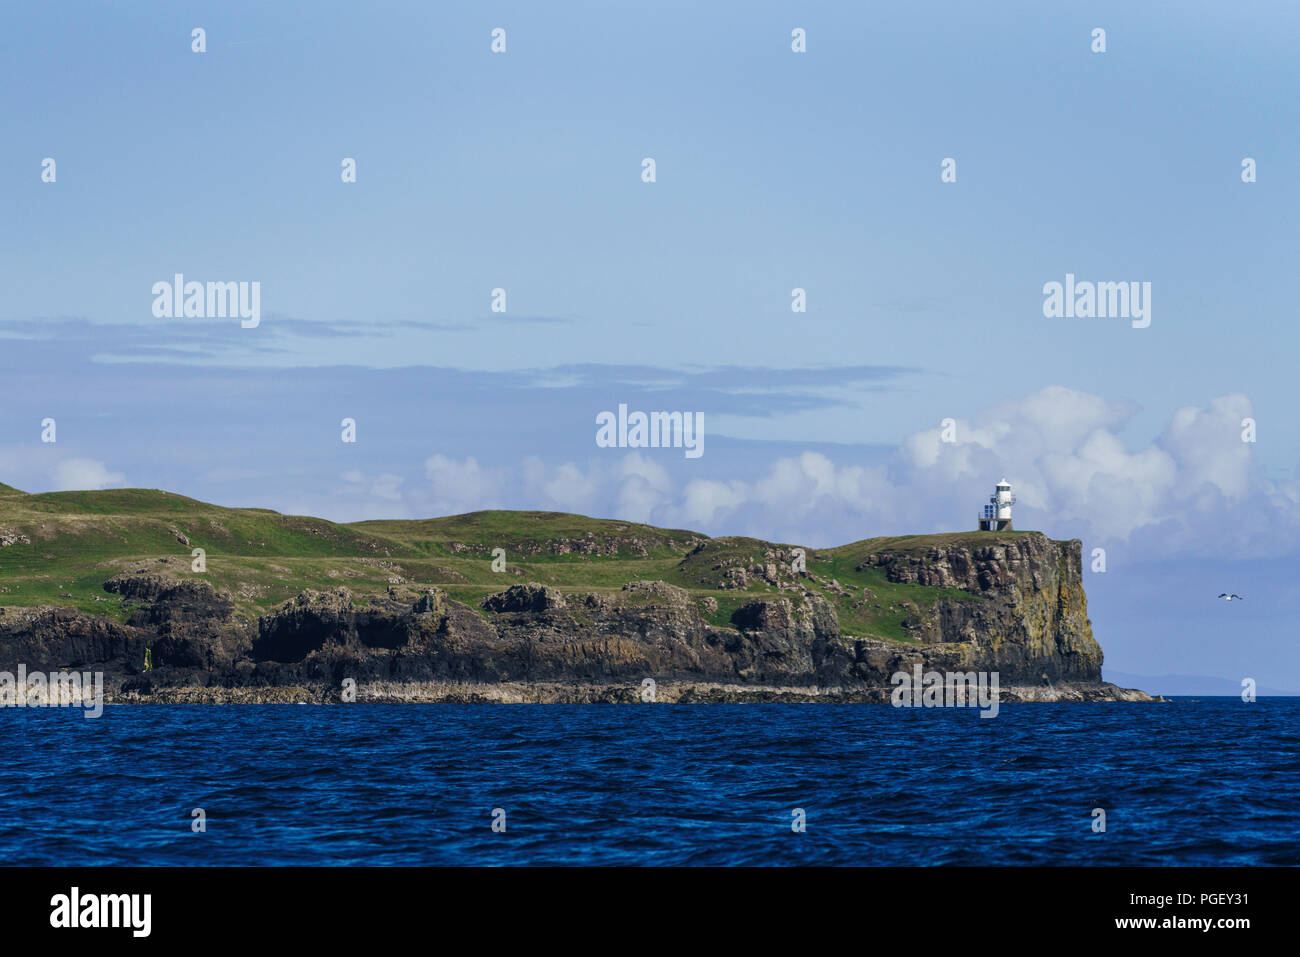 Einen kleinen Leuchtturm auf der Insel Canna. Canna ist die westlichste der kleinen Inseln, Schären, in der Schottischen Inneren Hebriden. Stockfoto